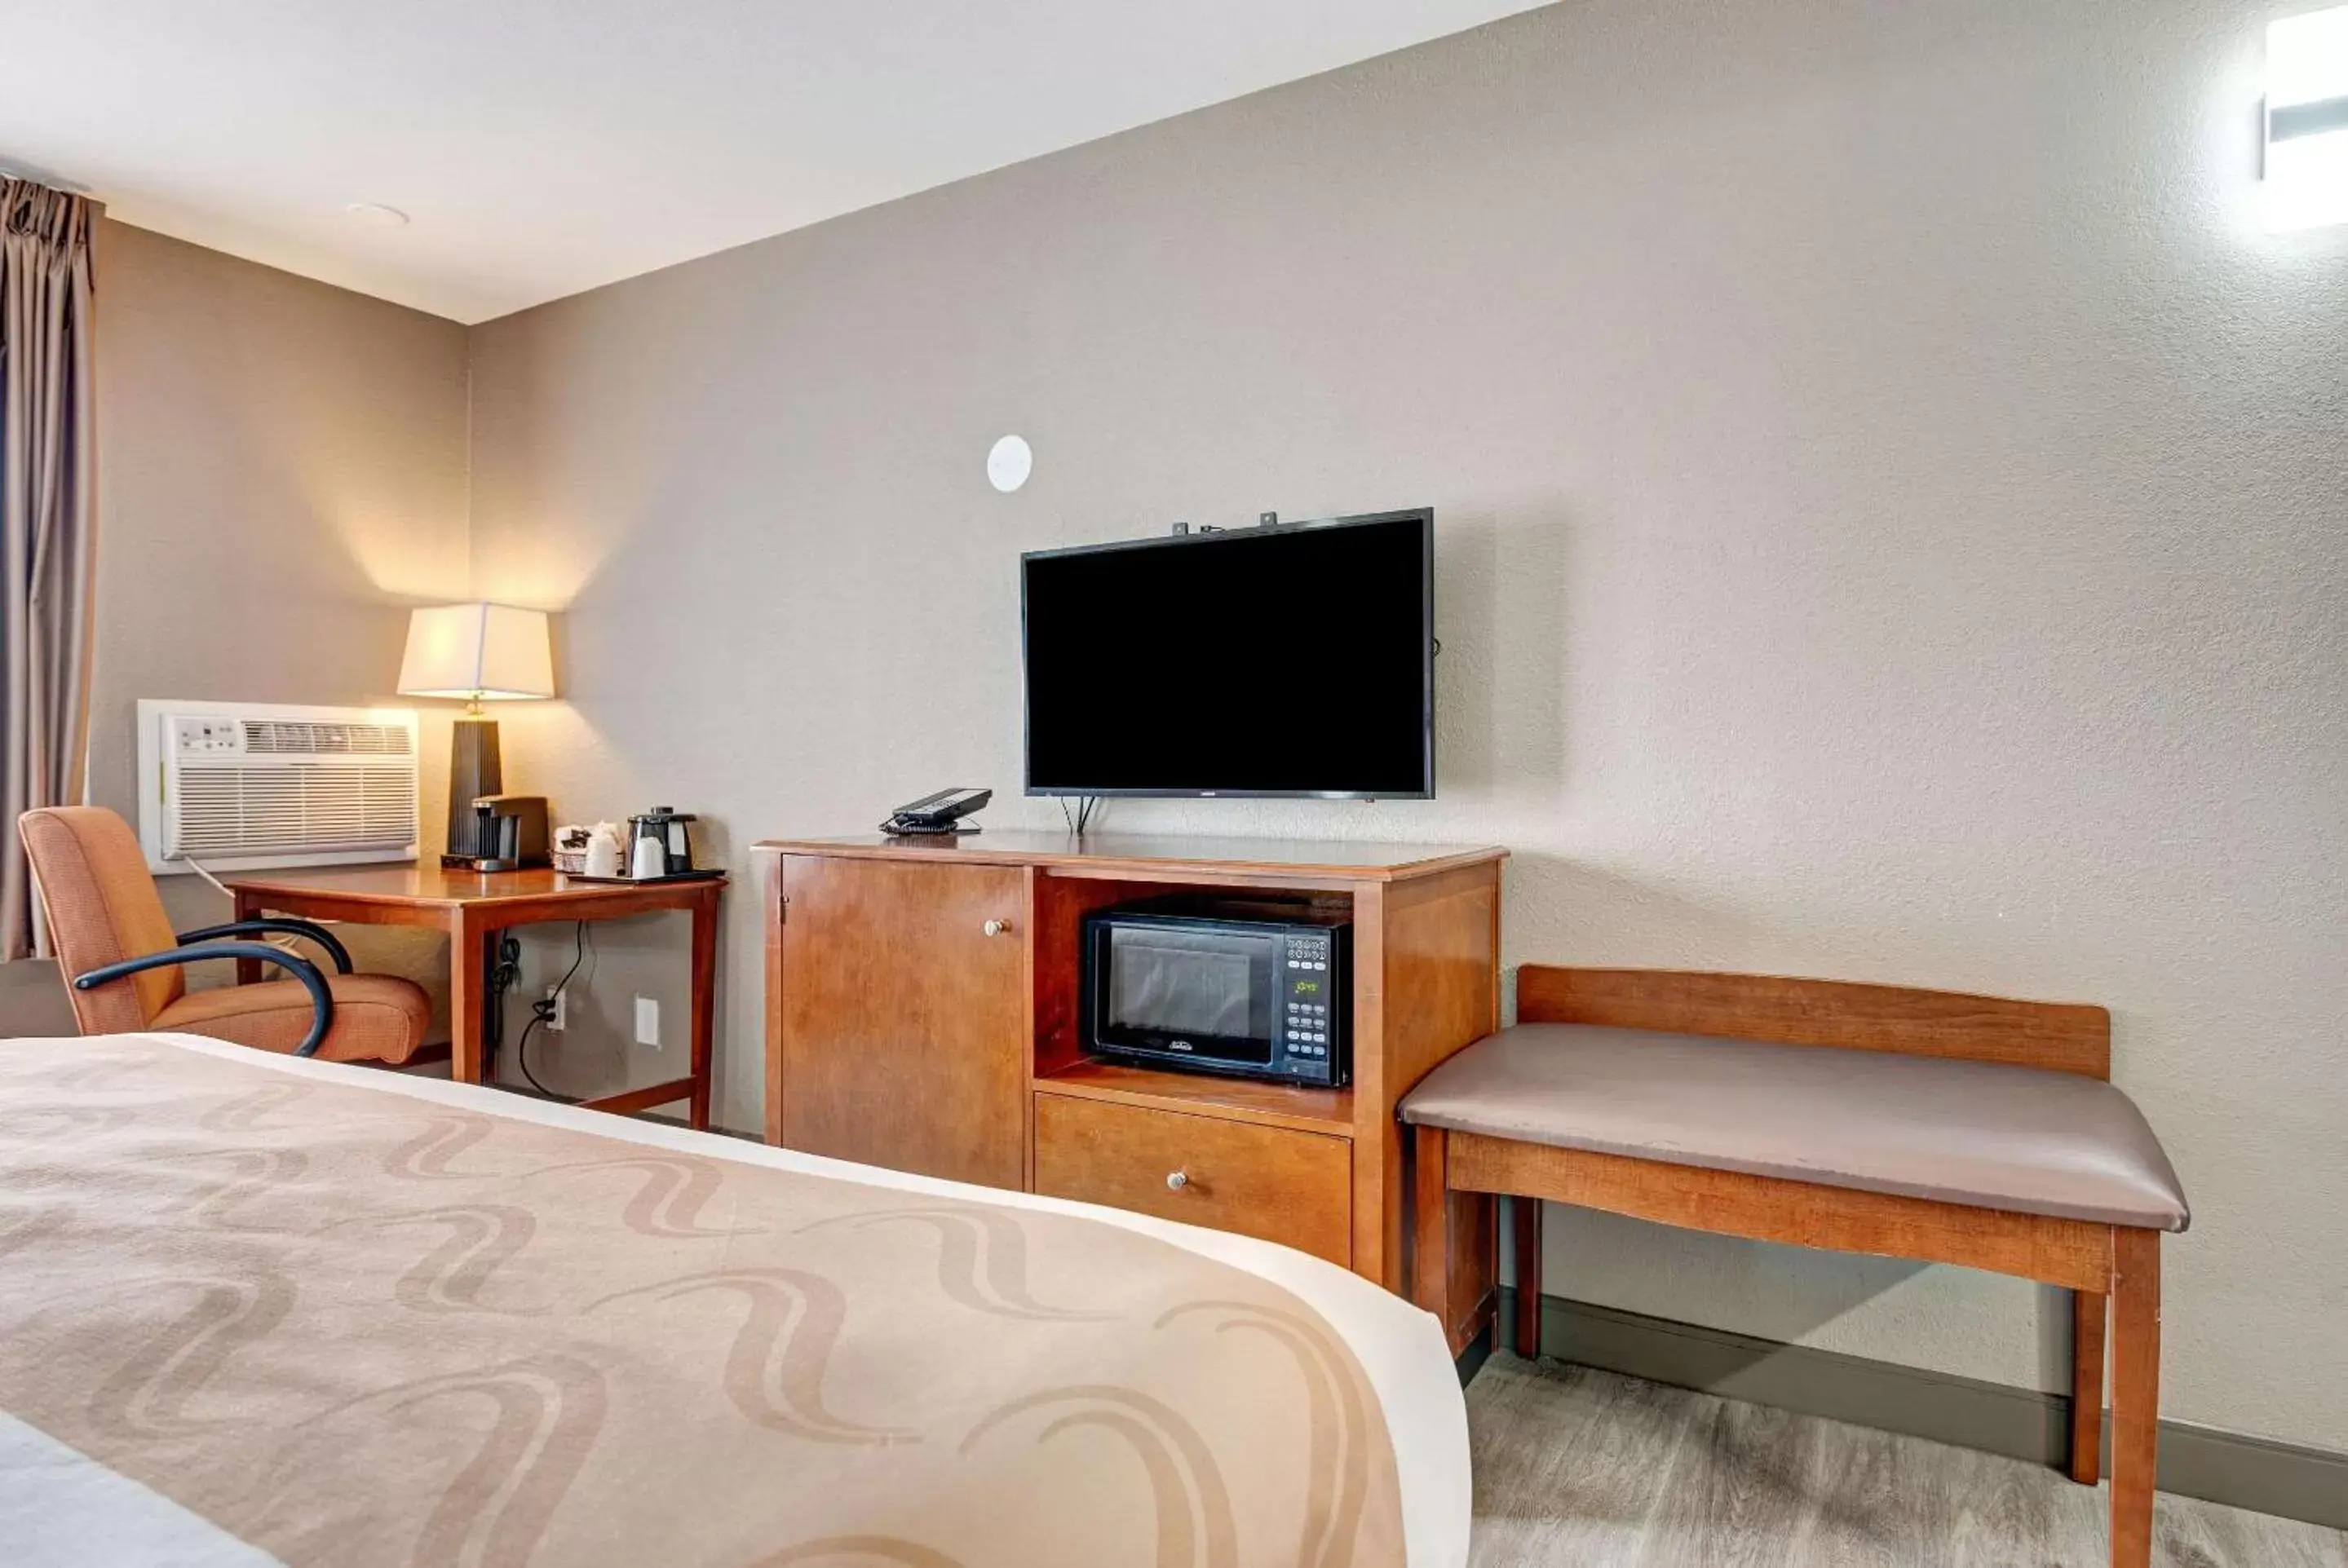 Bedroom, TV/Entertainment Center in Quality Inn